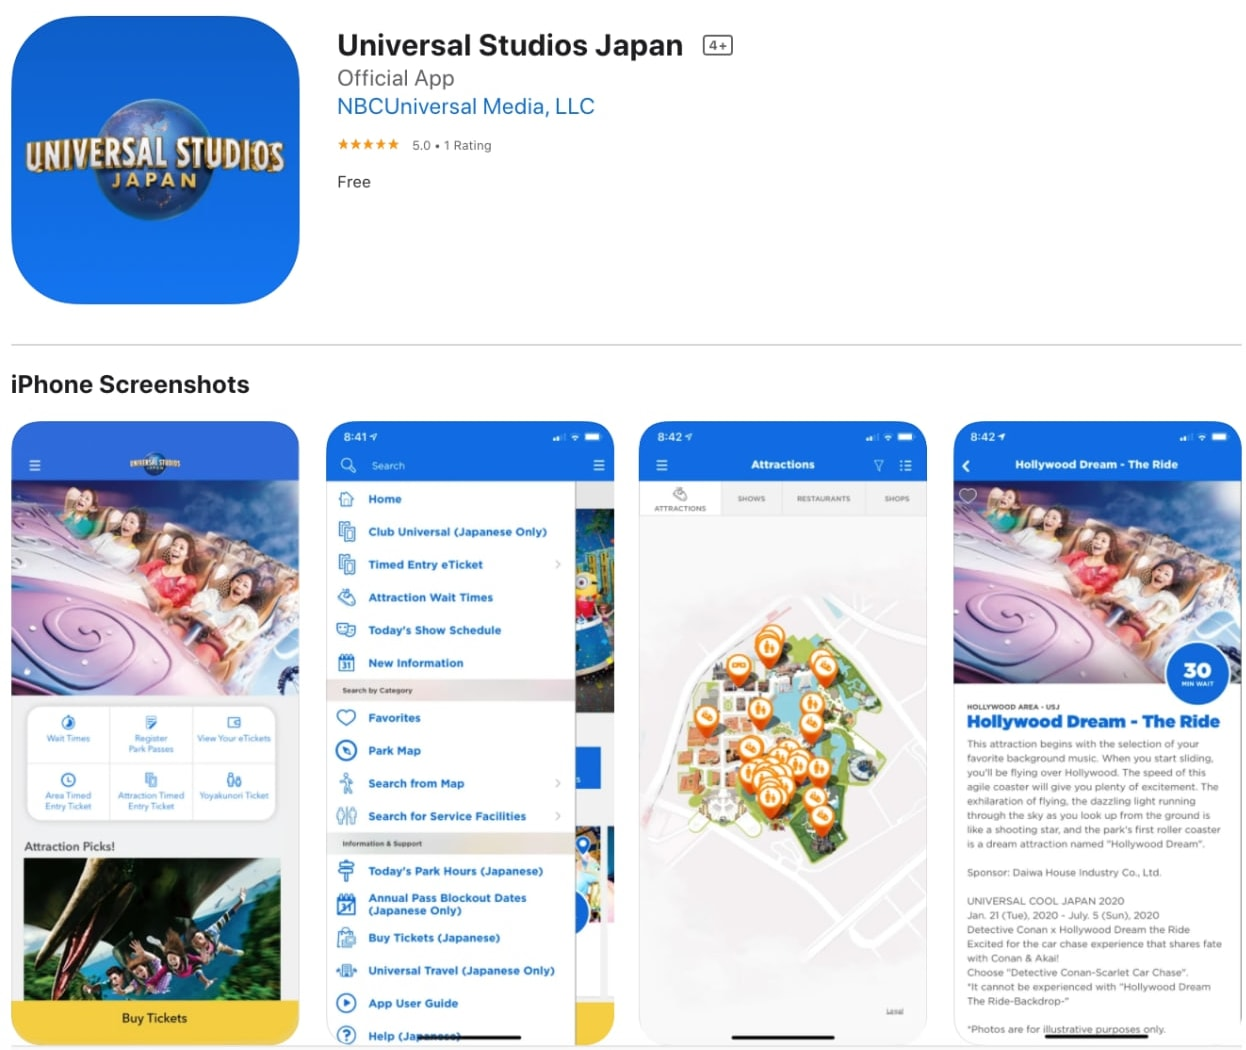 USJ guide - USJ app